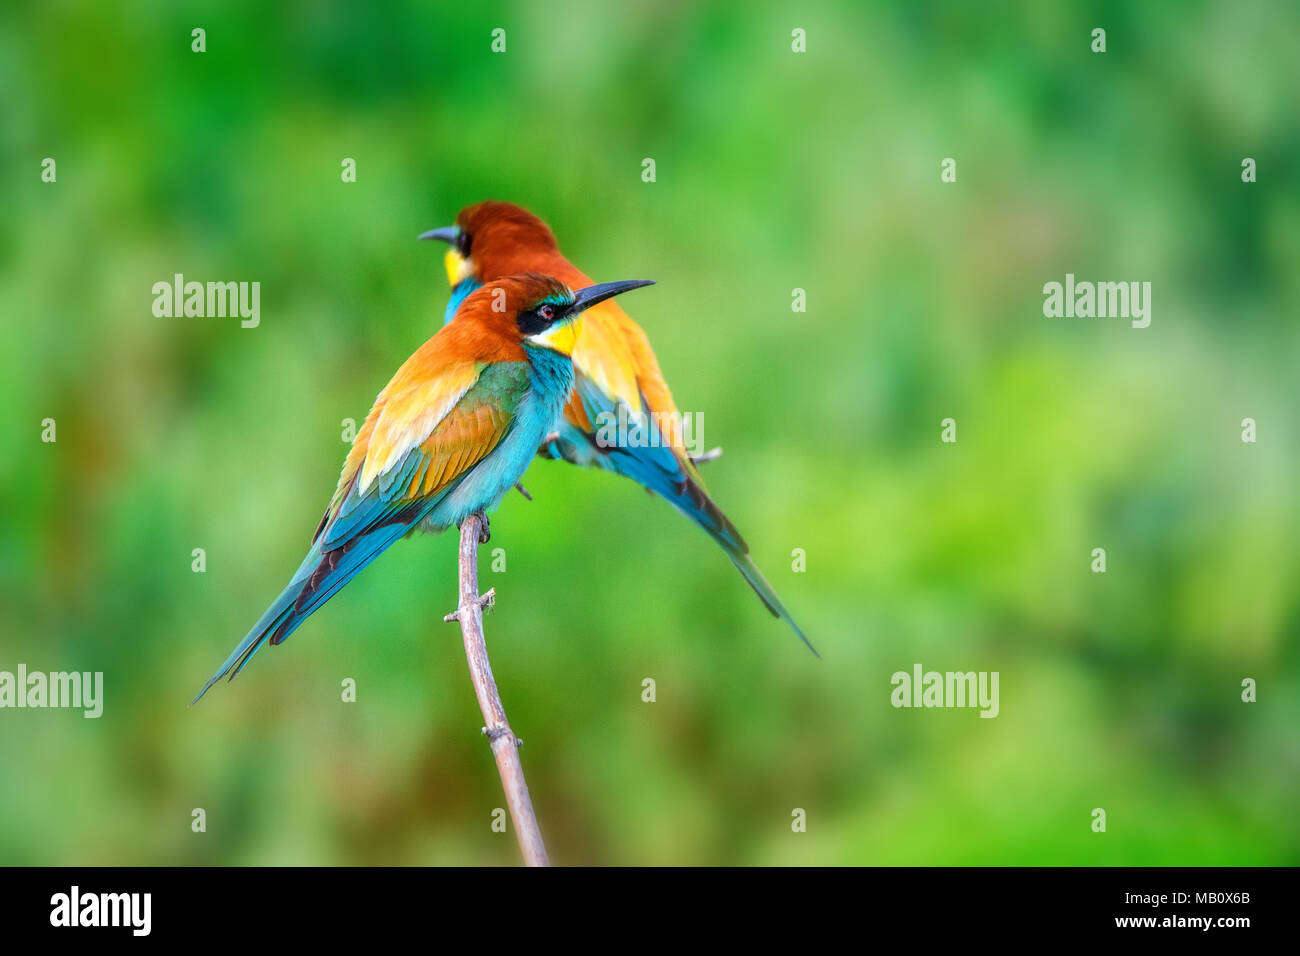 Par de coloridos pájaros tropicales exóticos abejarucos Foto de stock